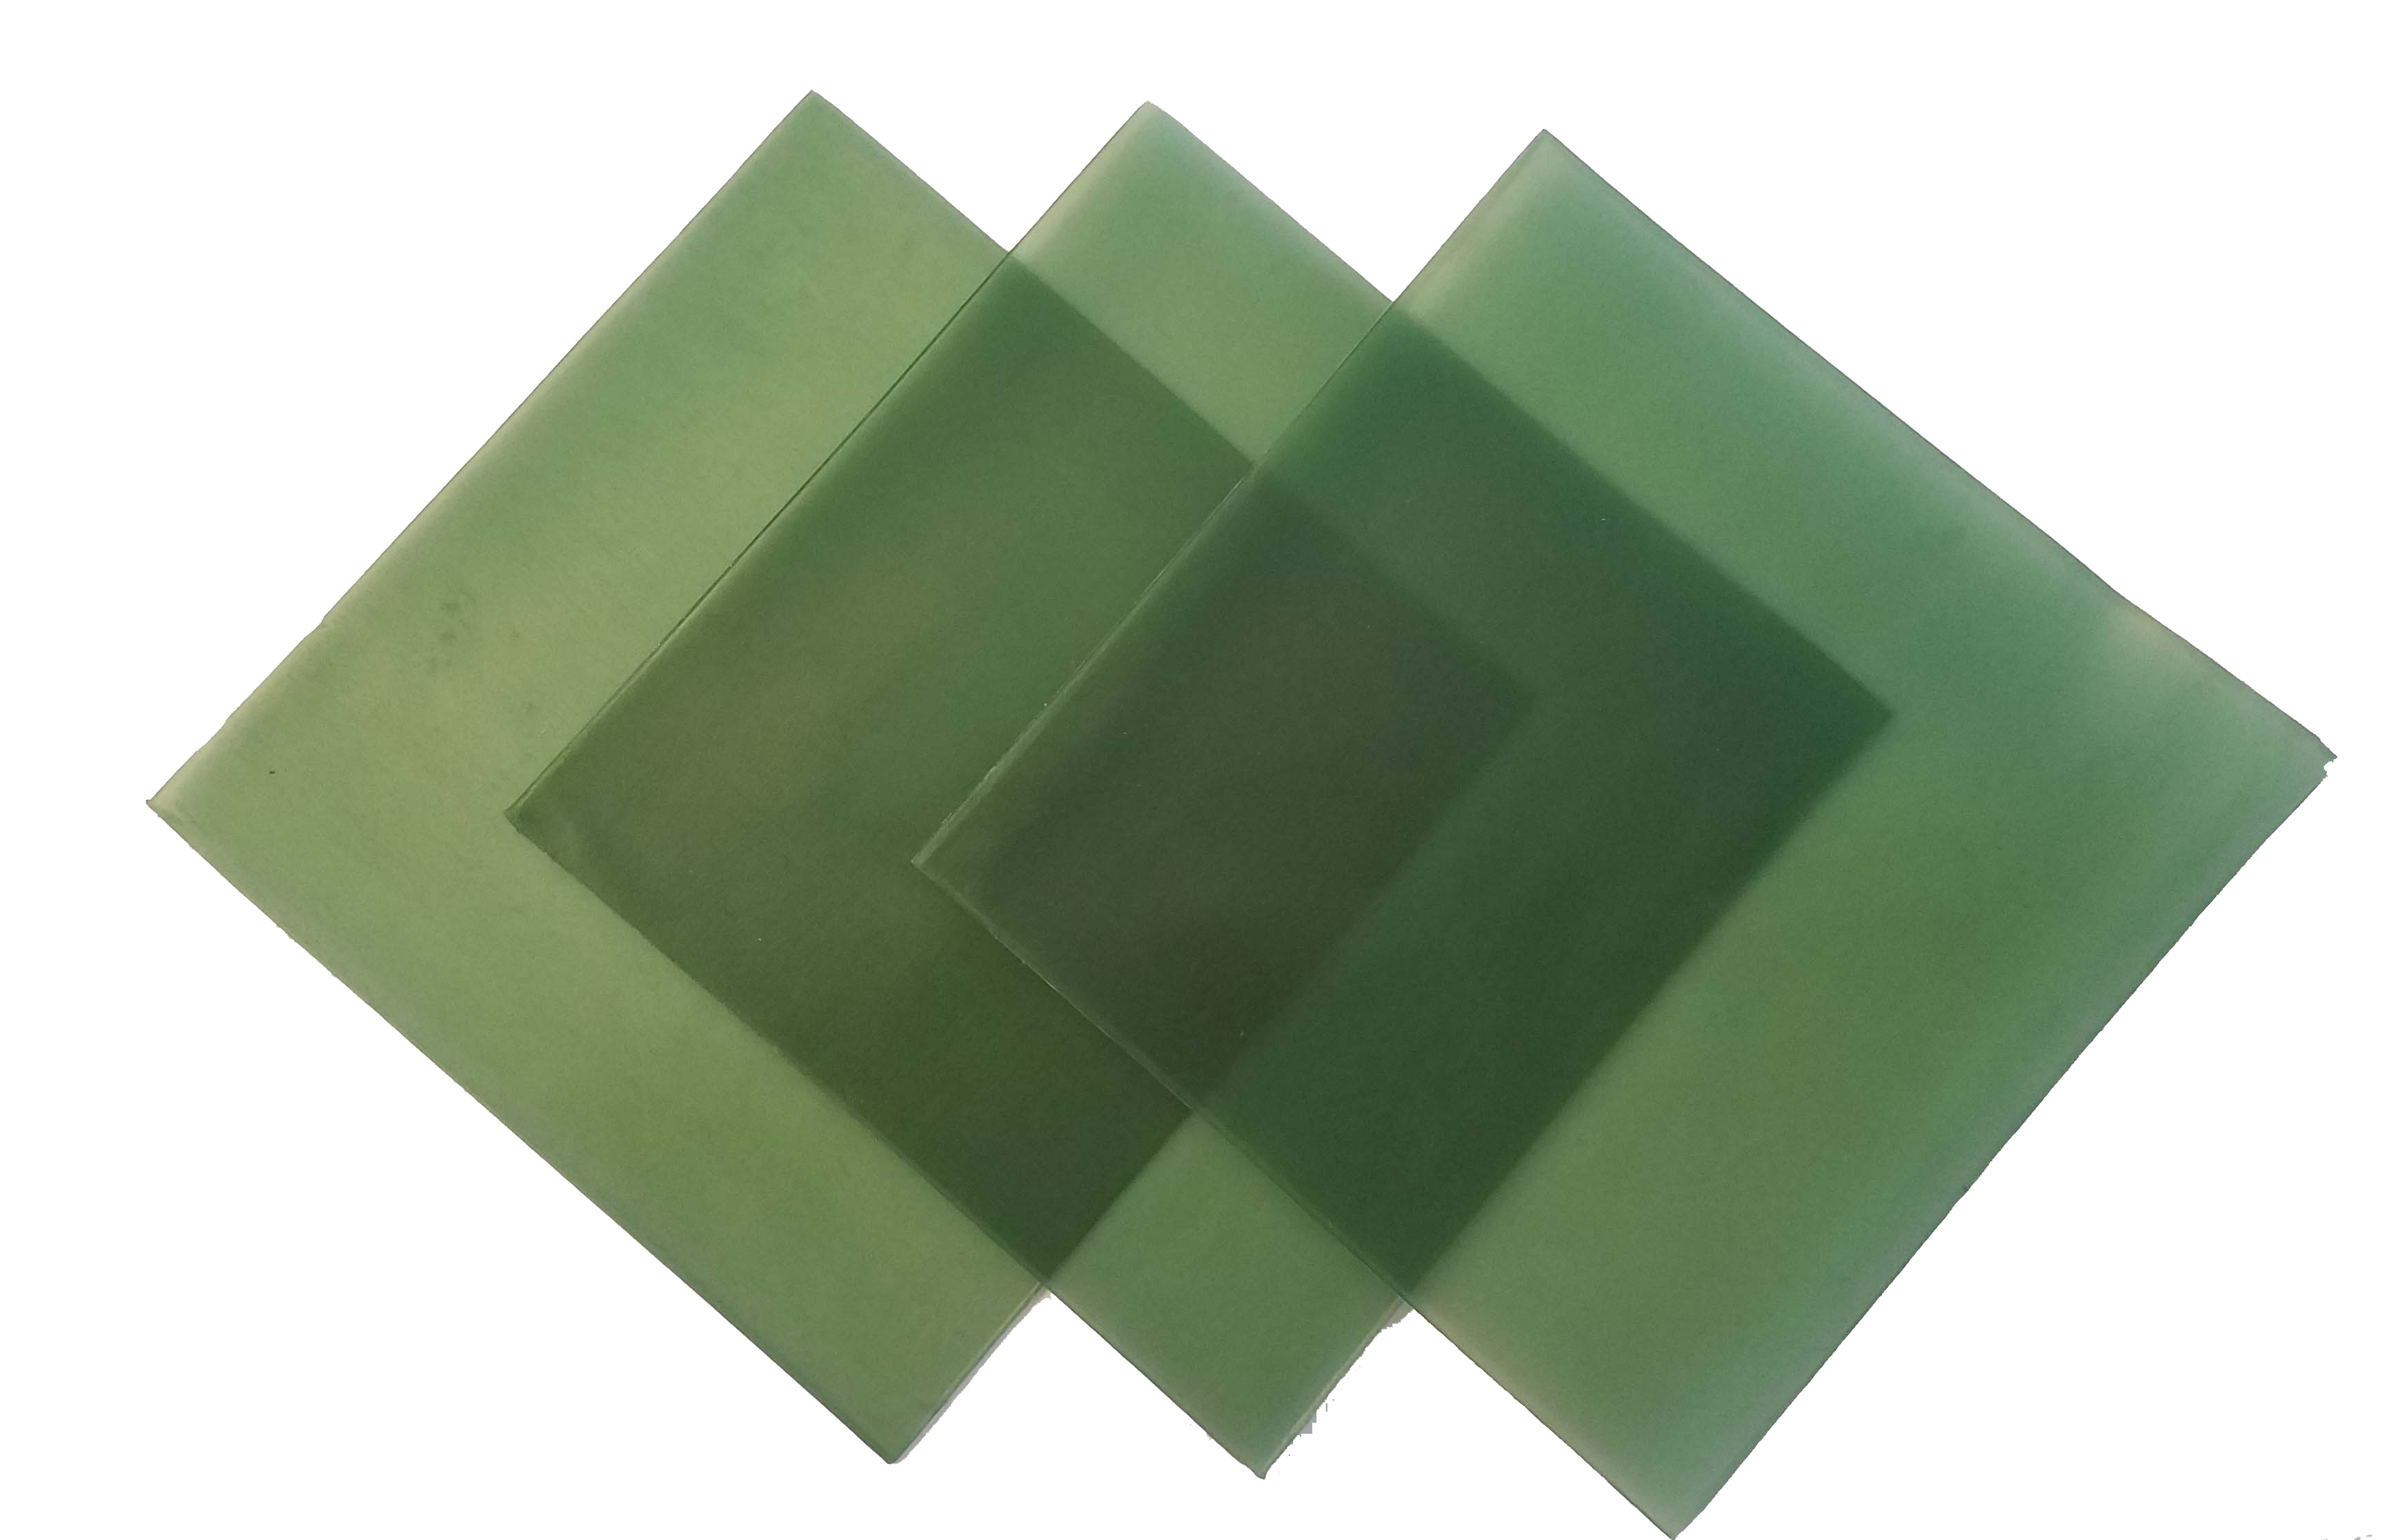 4"x4" sheet wax 28 gauge green